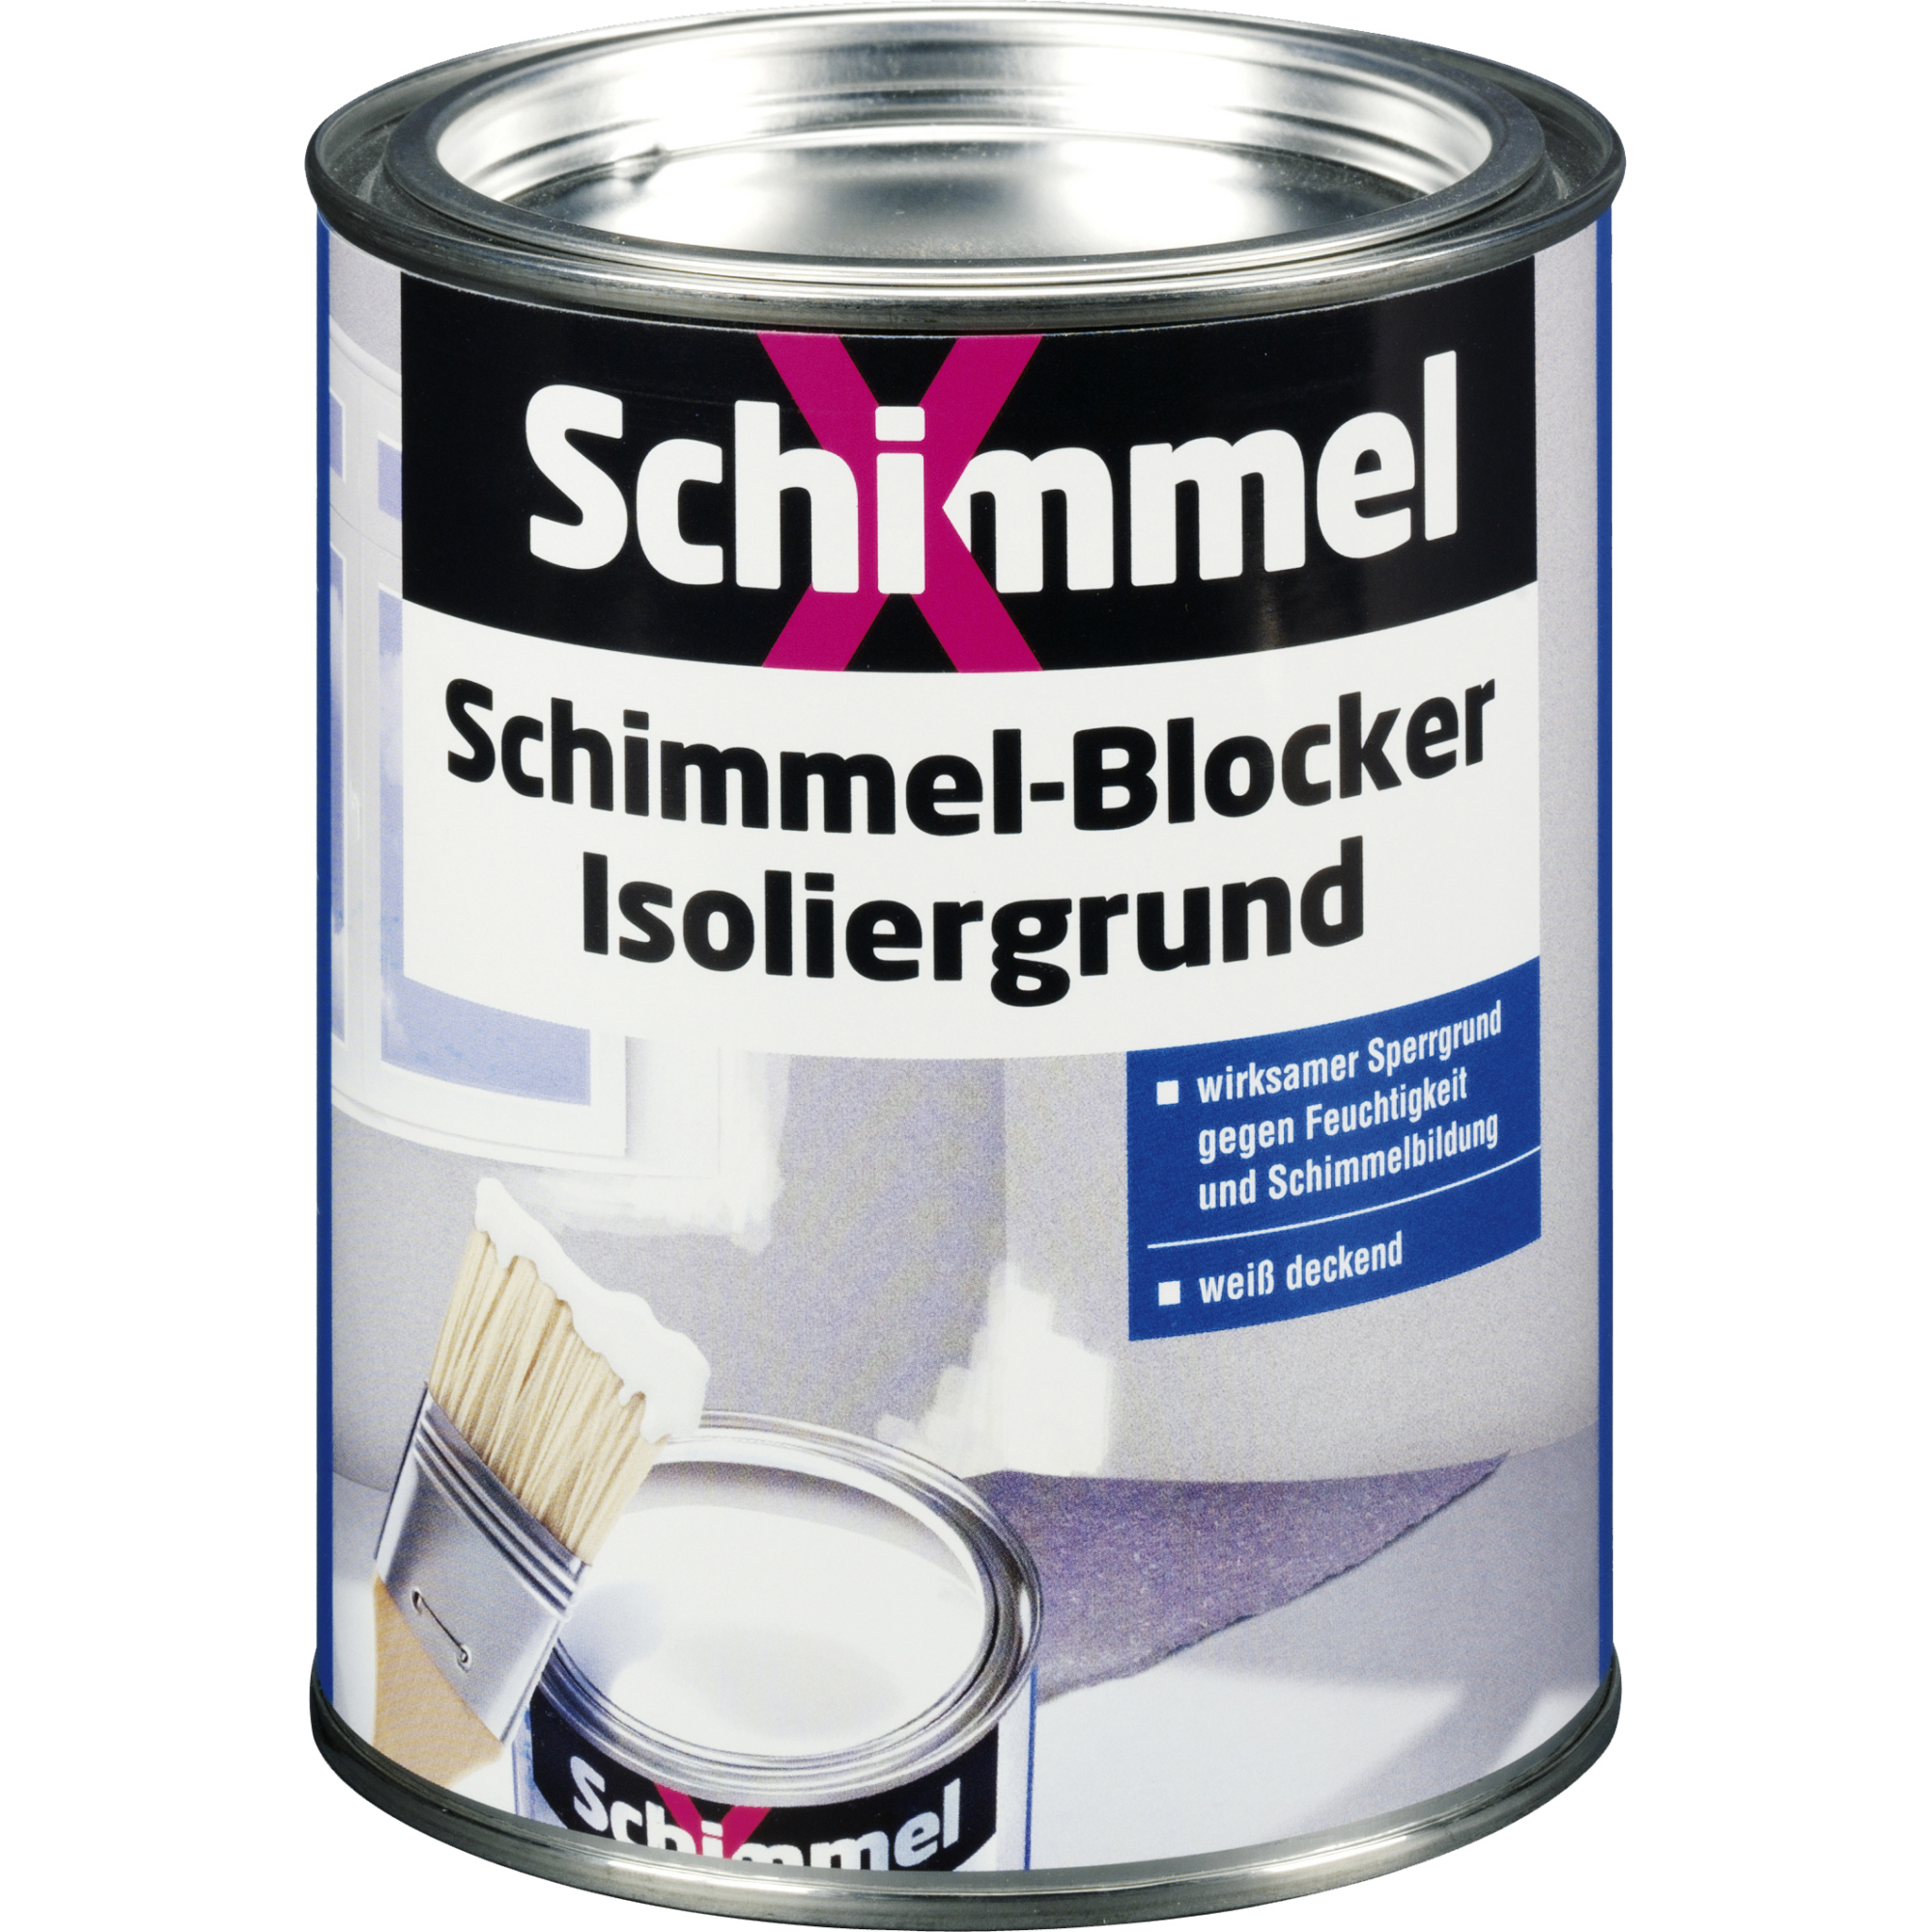 Schimmel-Blocker-Isoliergrund 'SchimmelX' 0,75 l + product picture